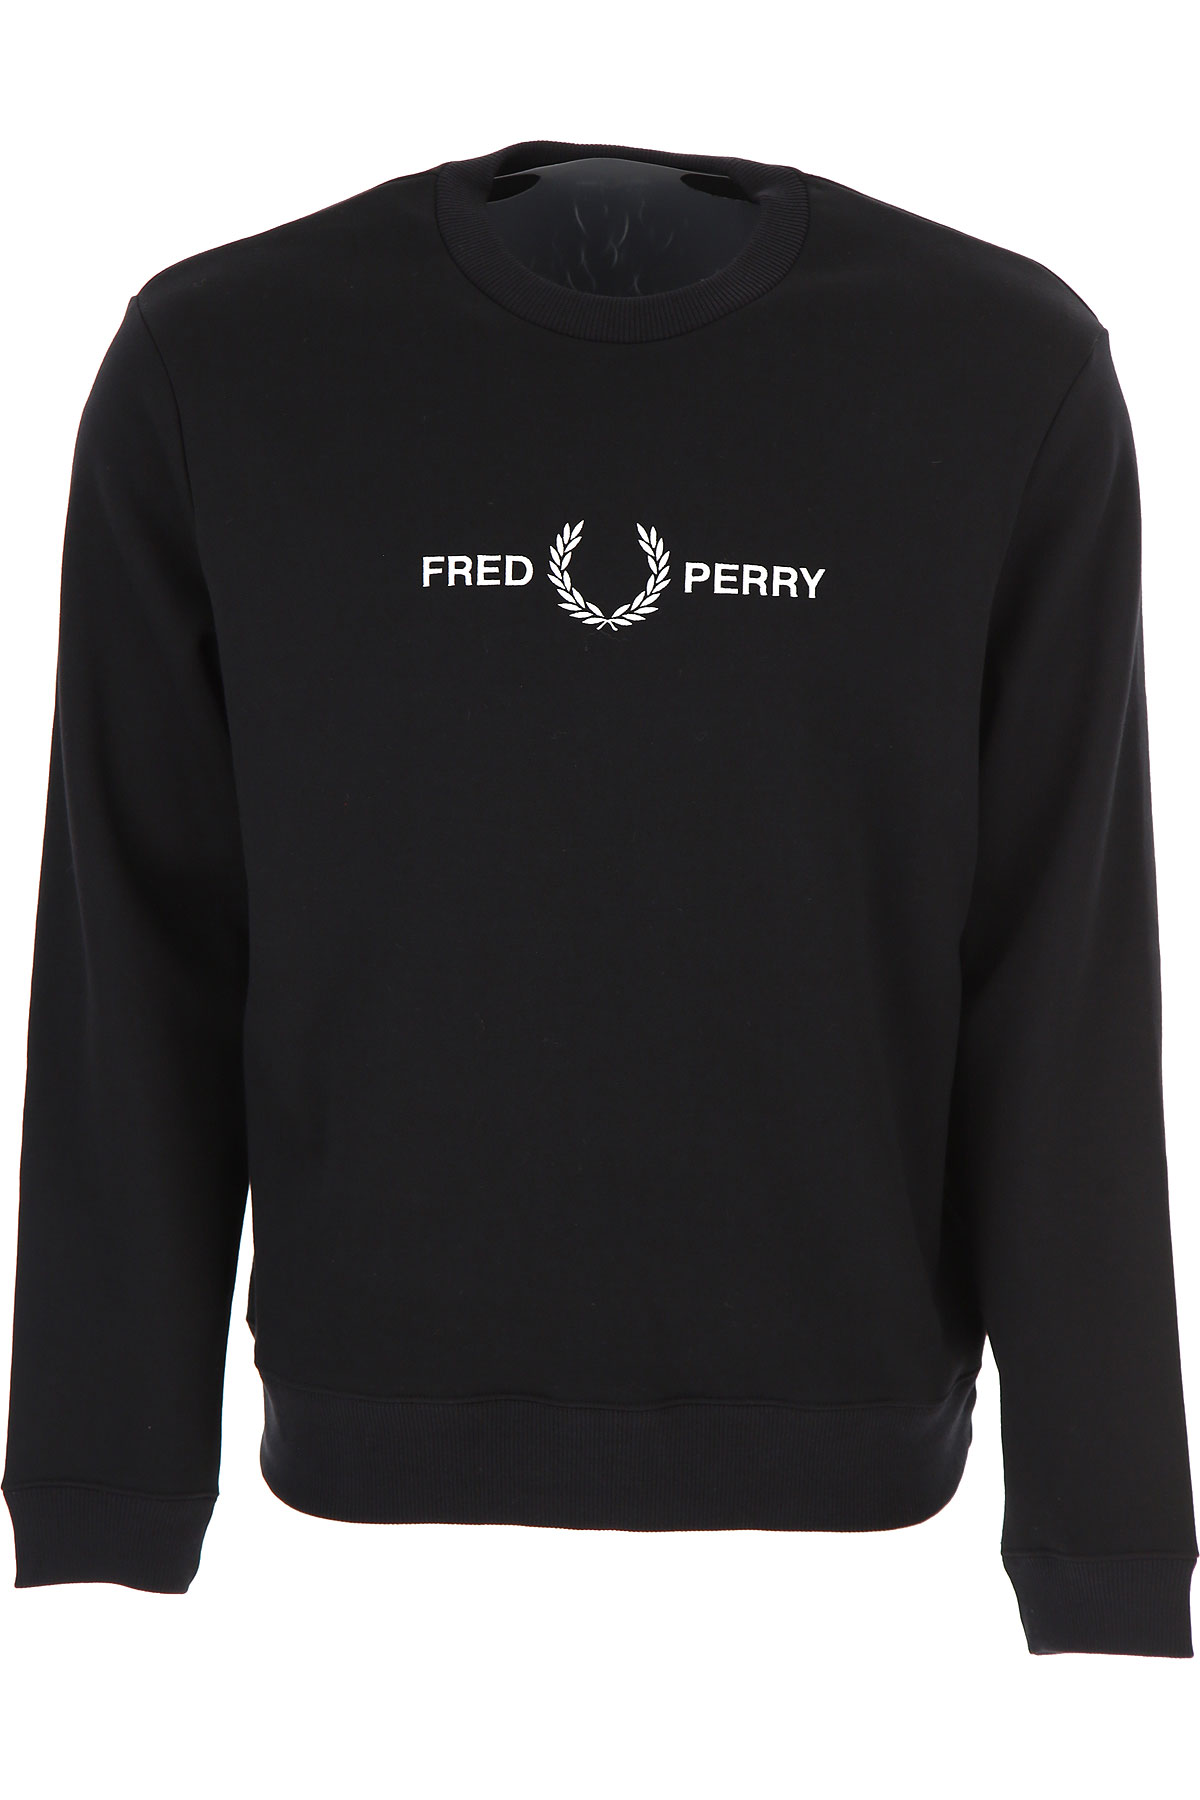 Fred Perry Sweatshirt für Herren, Kapuzenpulli, Hoodie, Sweats Günstig im Sale, Schwarz, Baumwolle, 2017, L M S XL